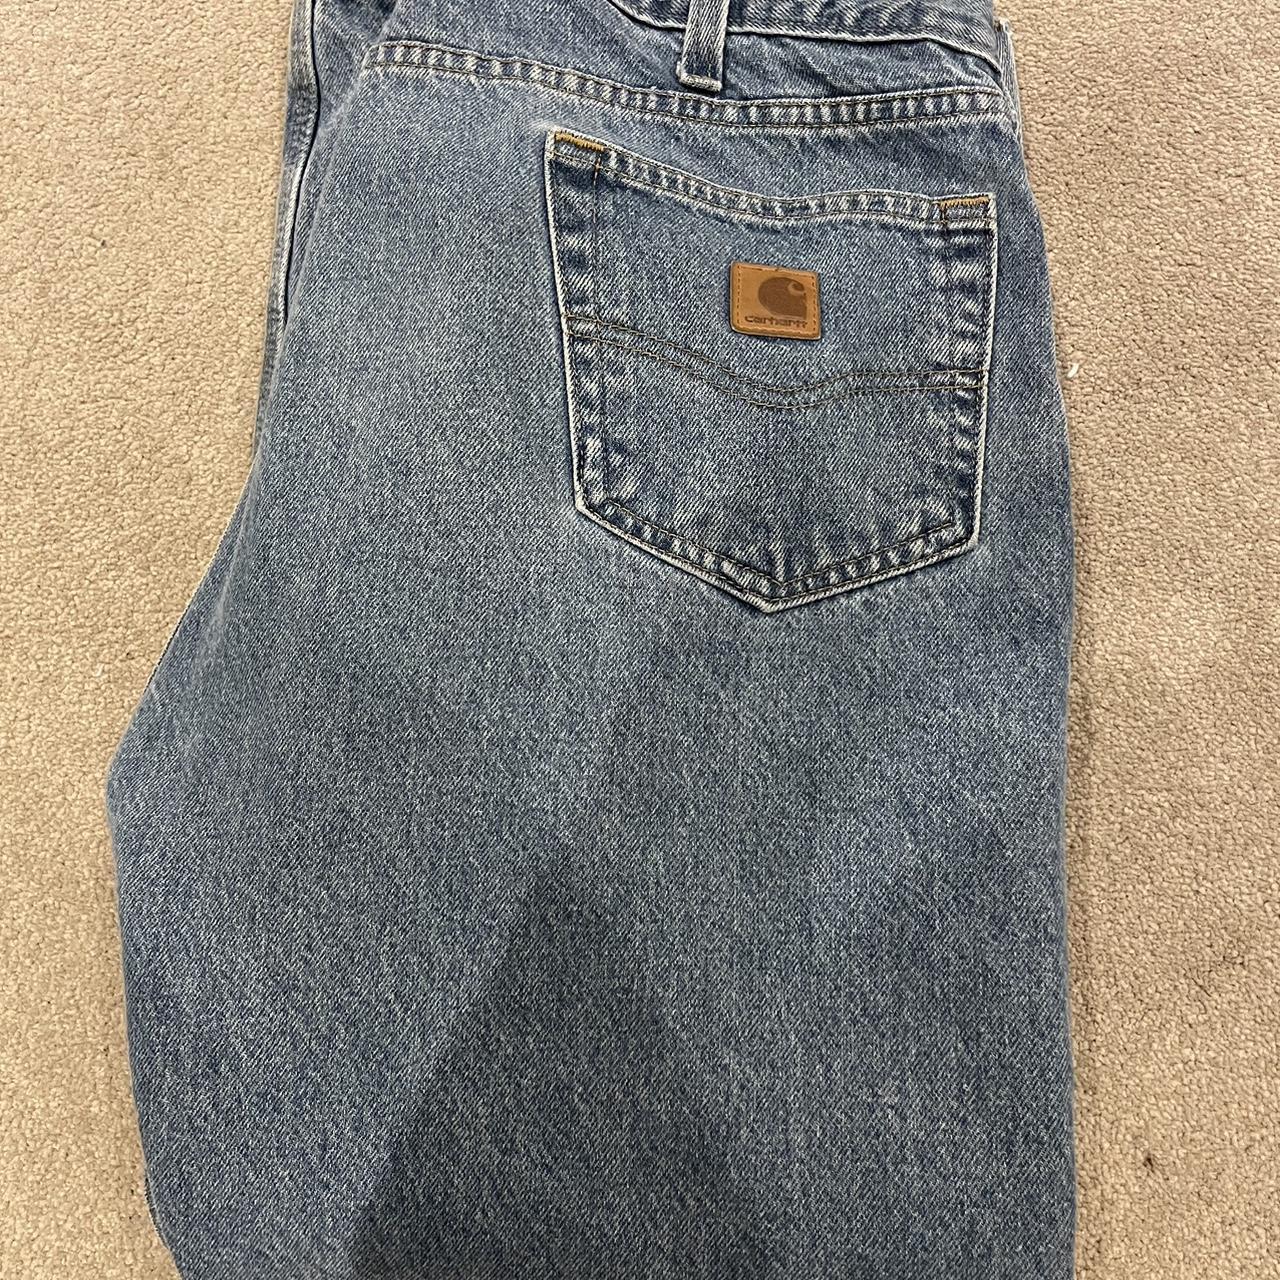 men’s Carhartt blue jeans excellent condition W 36... - Depop